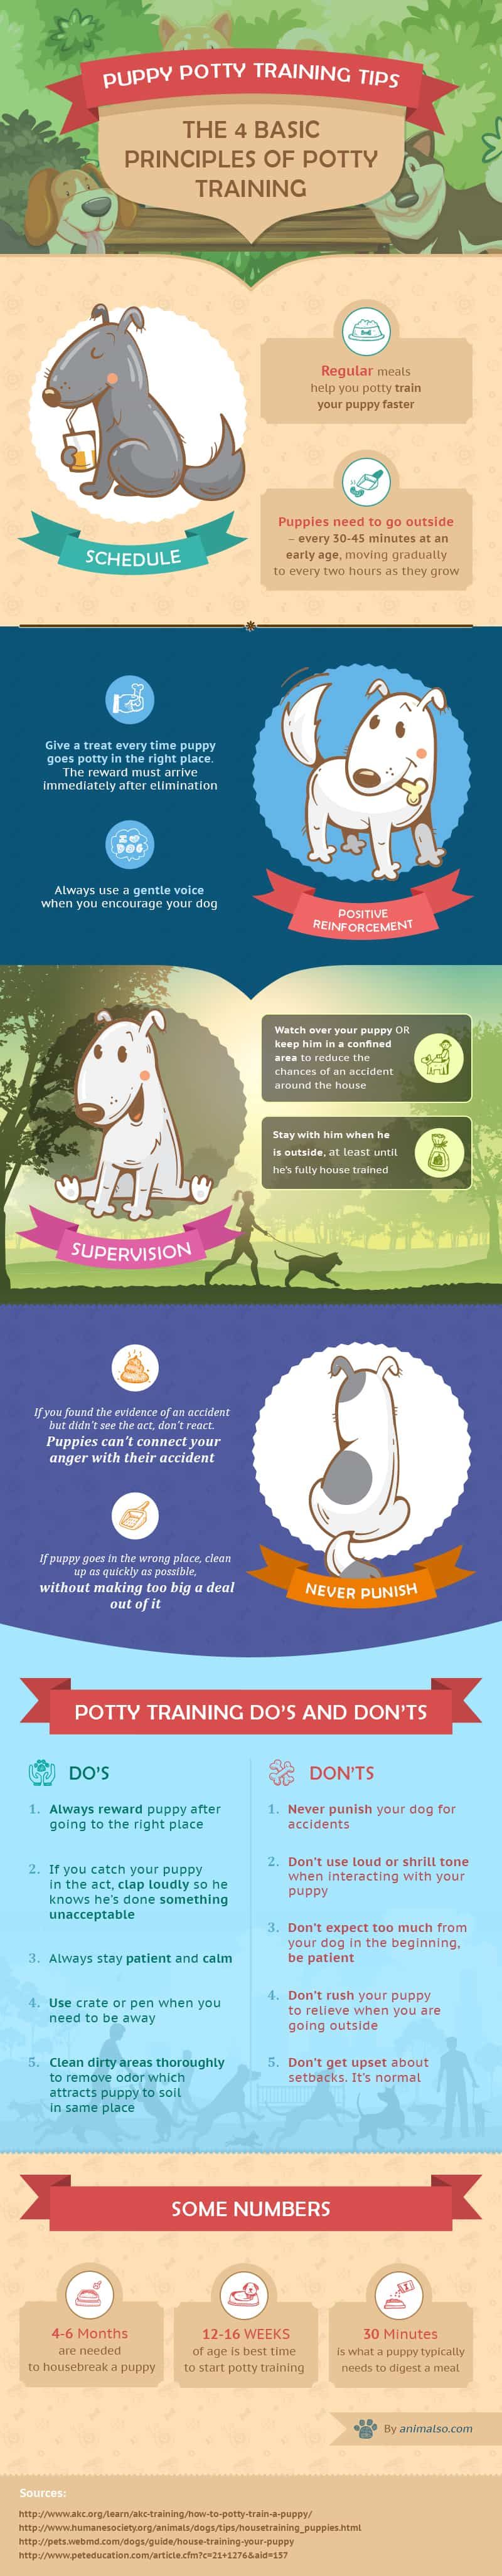 Tipy na výcvik nočník pre šteňatá a psy (kompletný sprievodca)